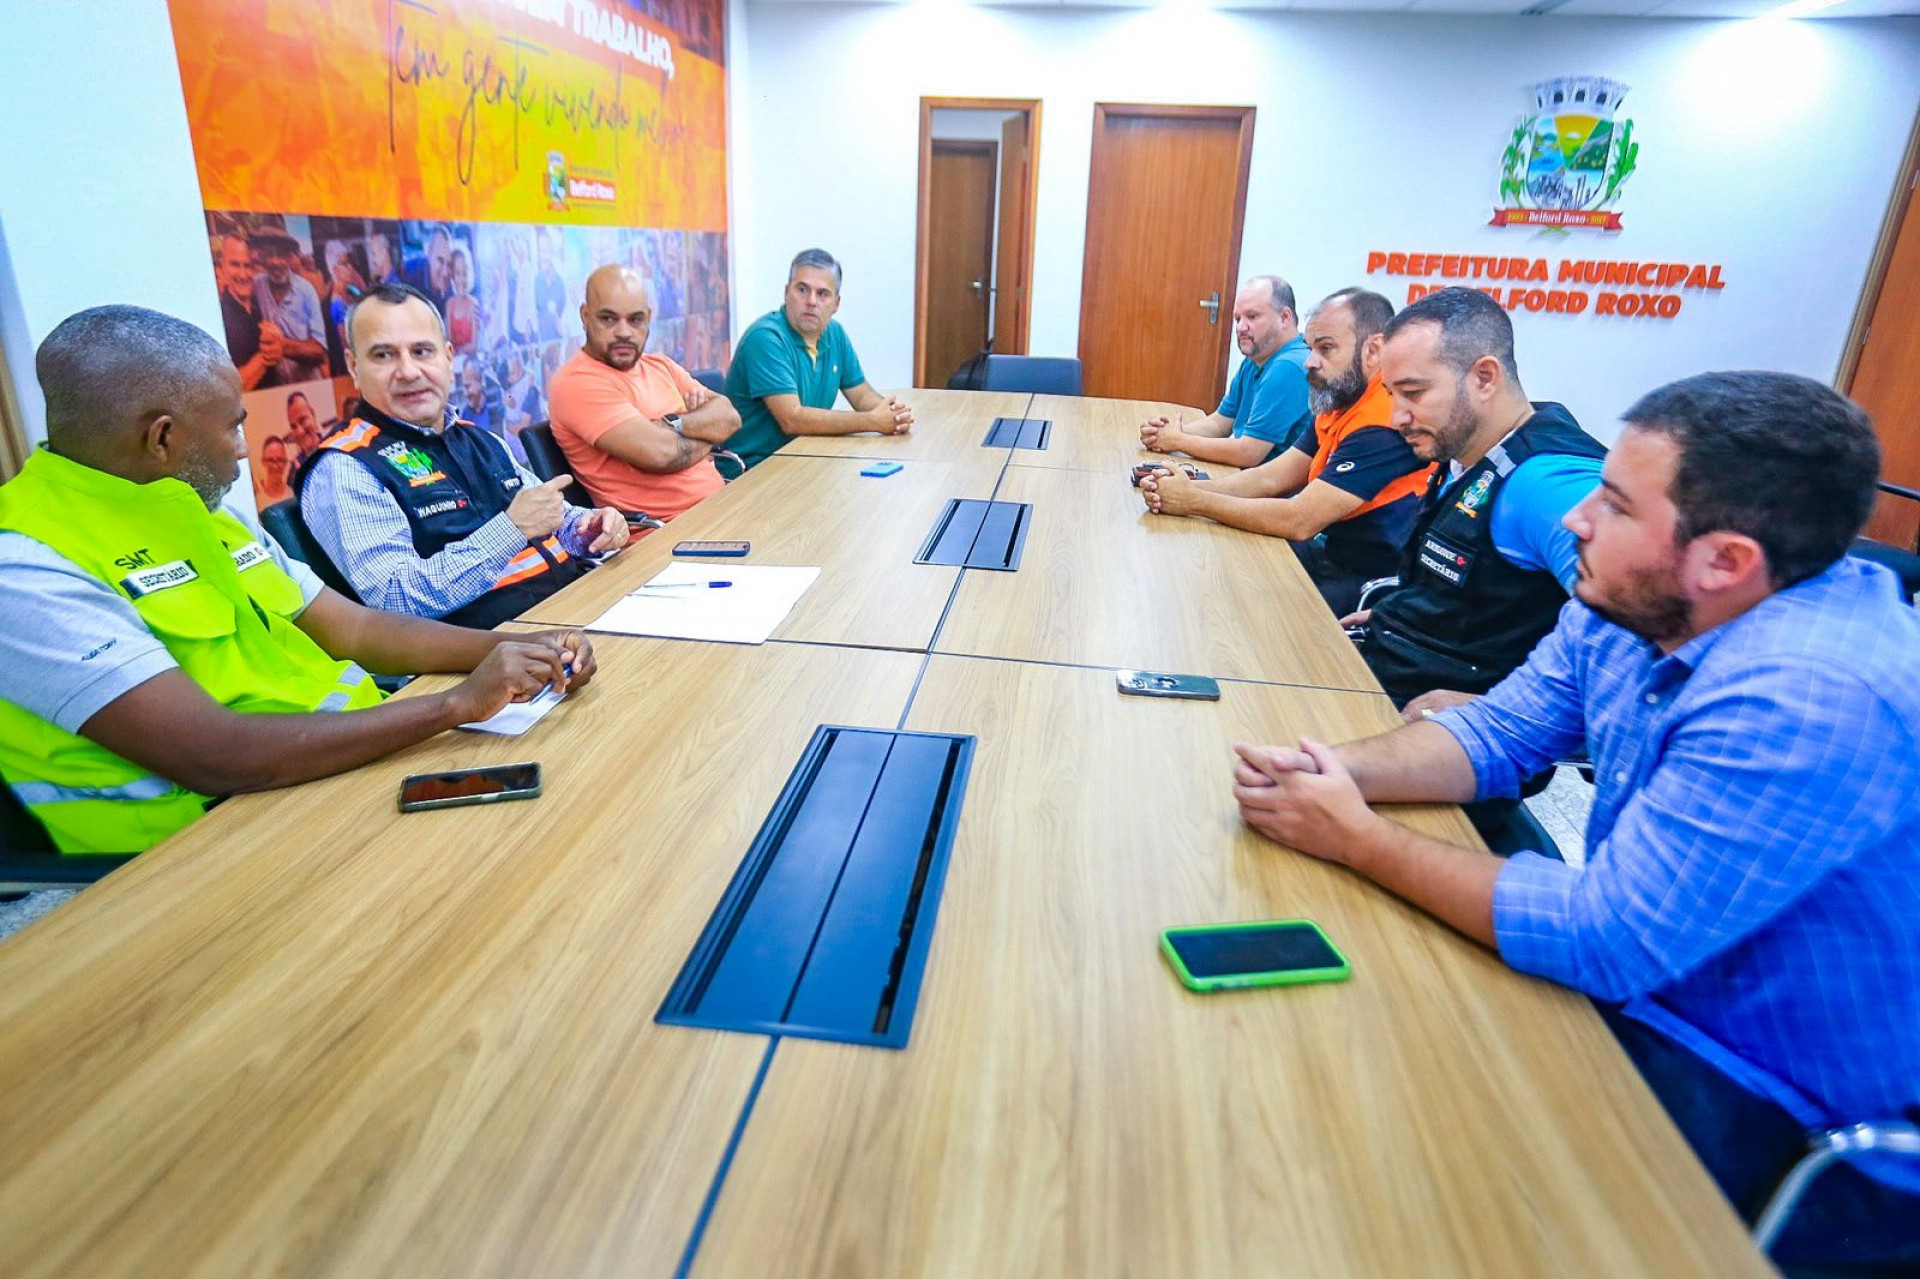 Durante a reunião com parte do secretariado, Waguinho chamou a atenção para os problemas de segurança - Rafael Barreto / PMBR